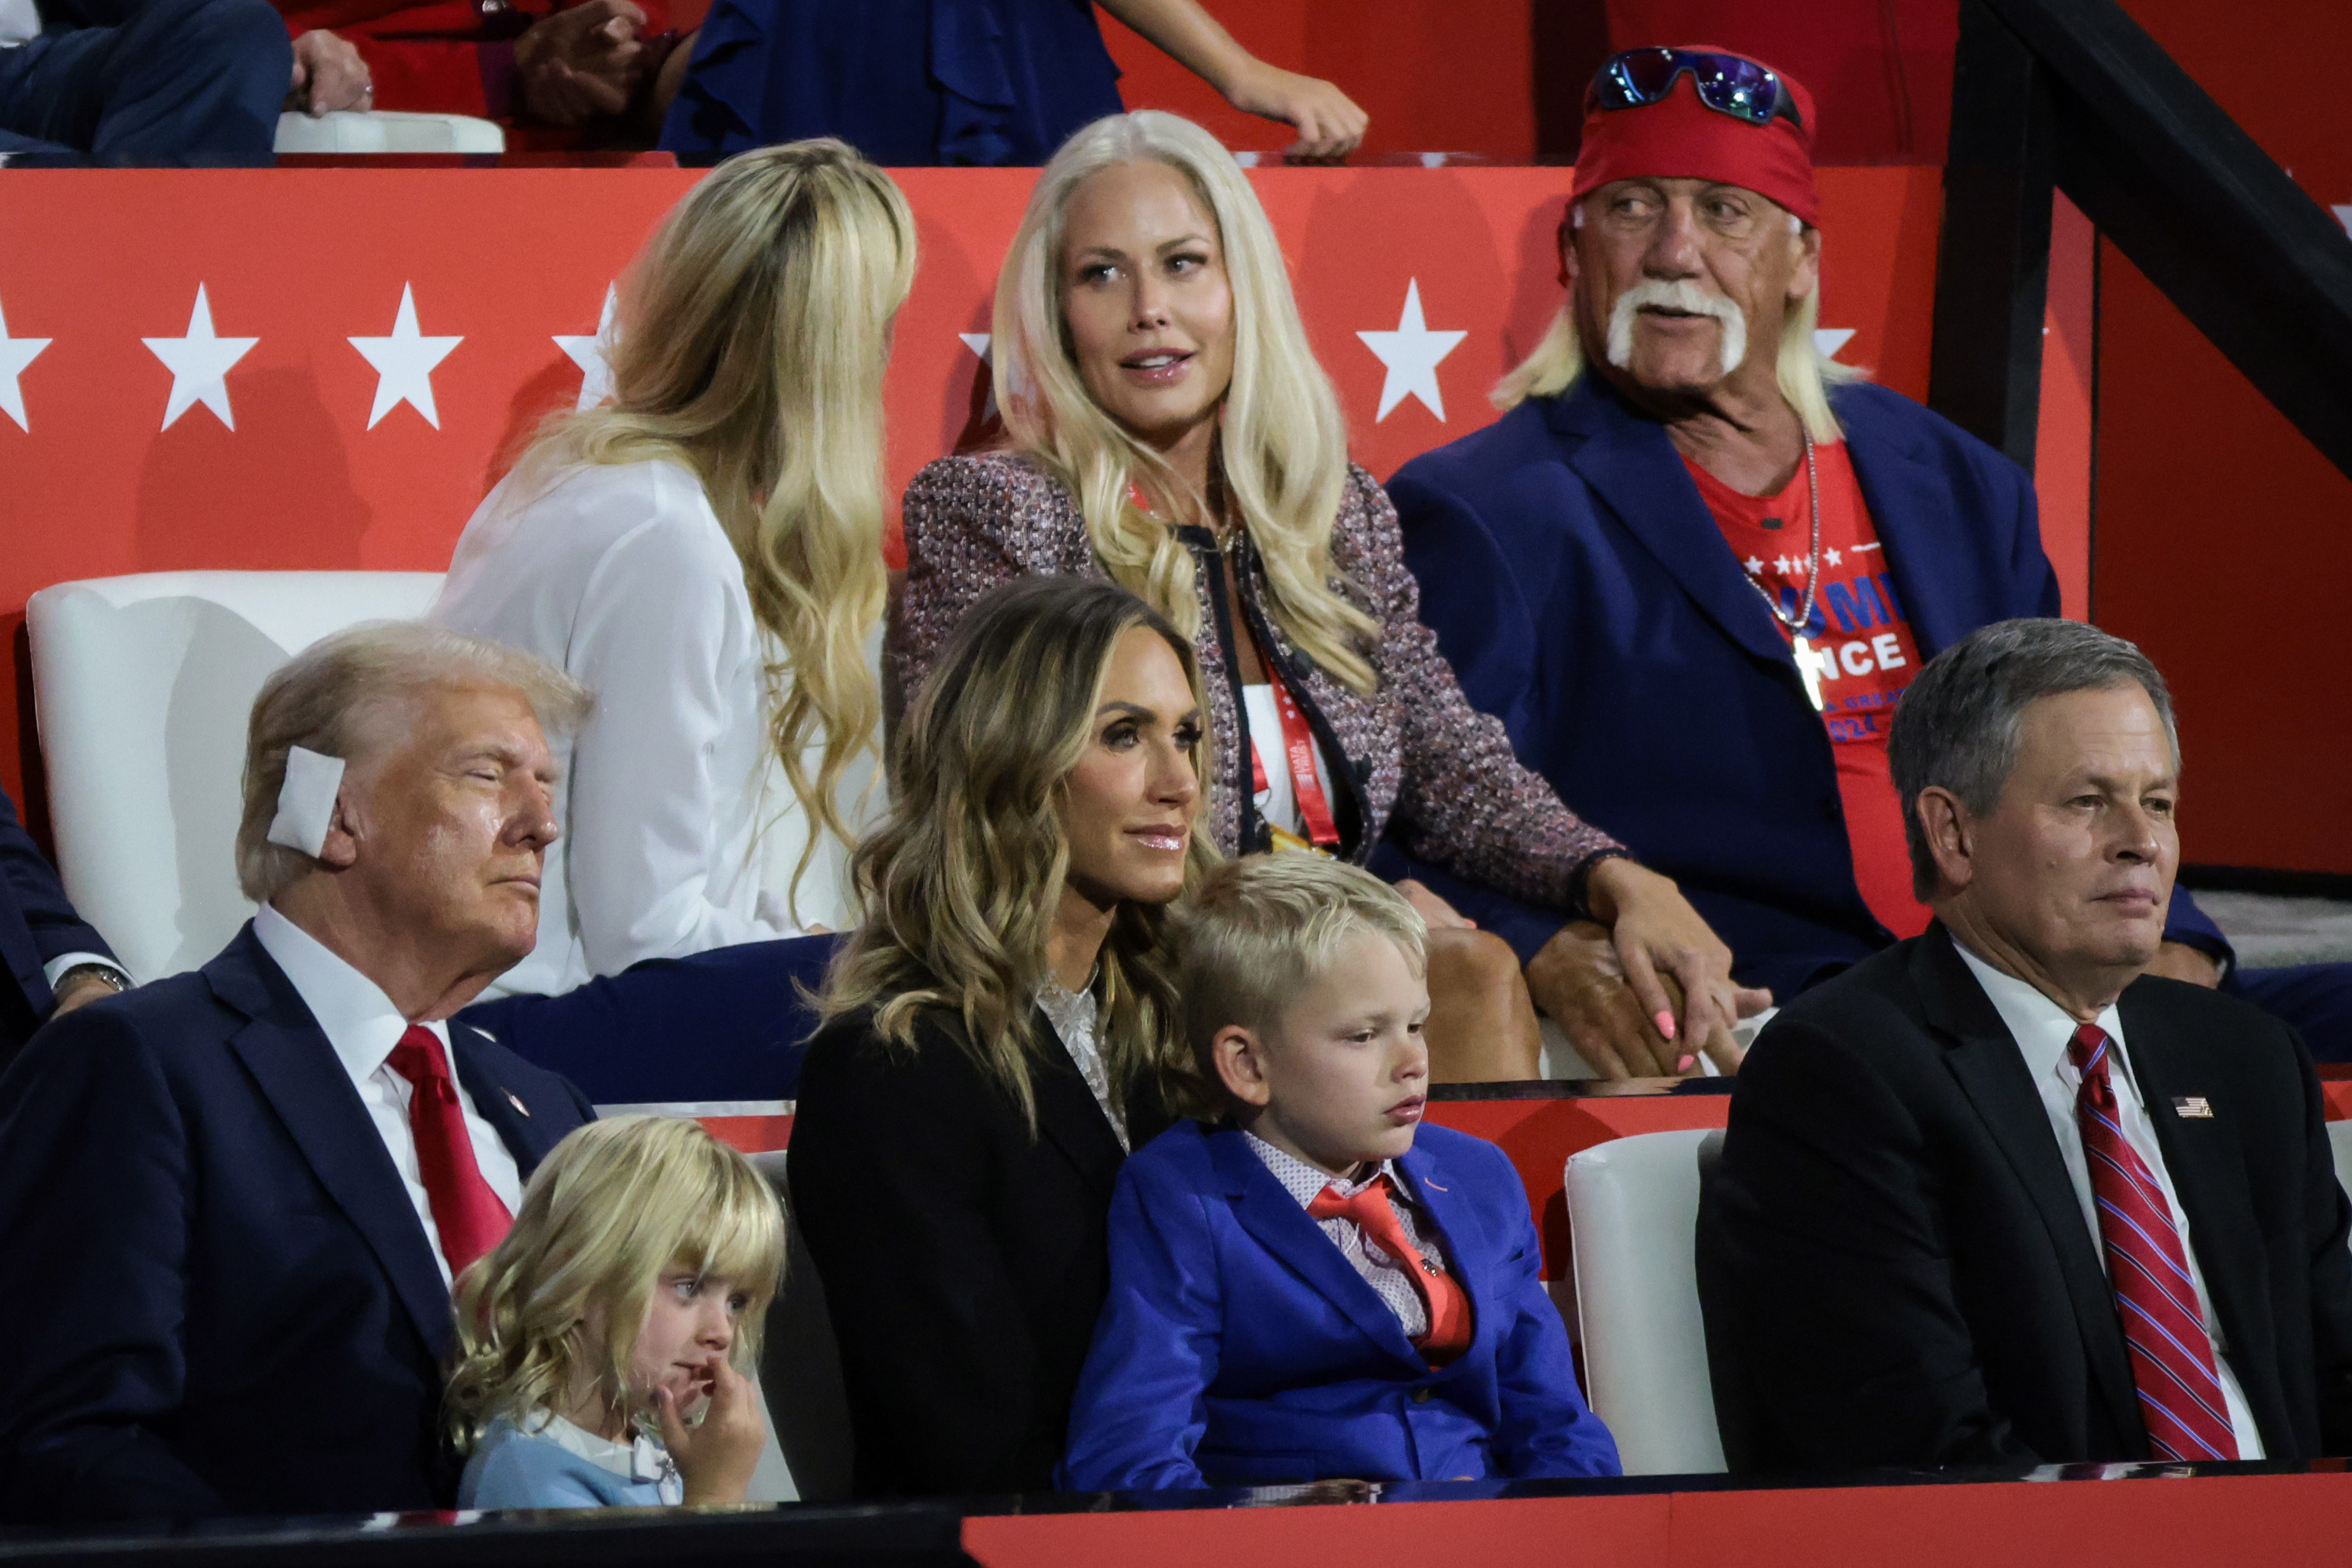 Hogan et sa femme, Sky Daily, assis dans la loge familiale VIP de Trump